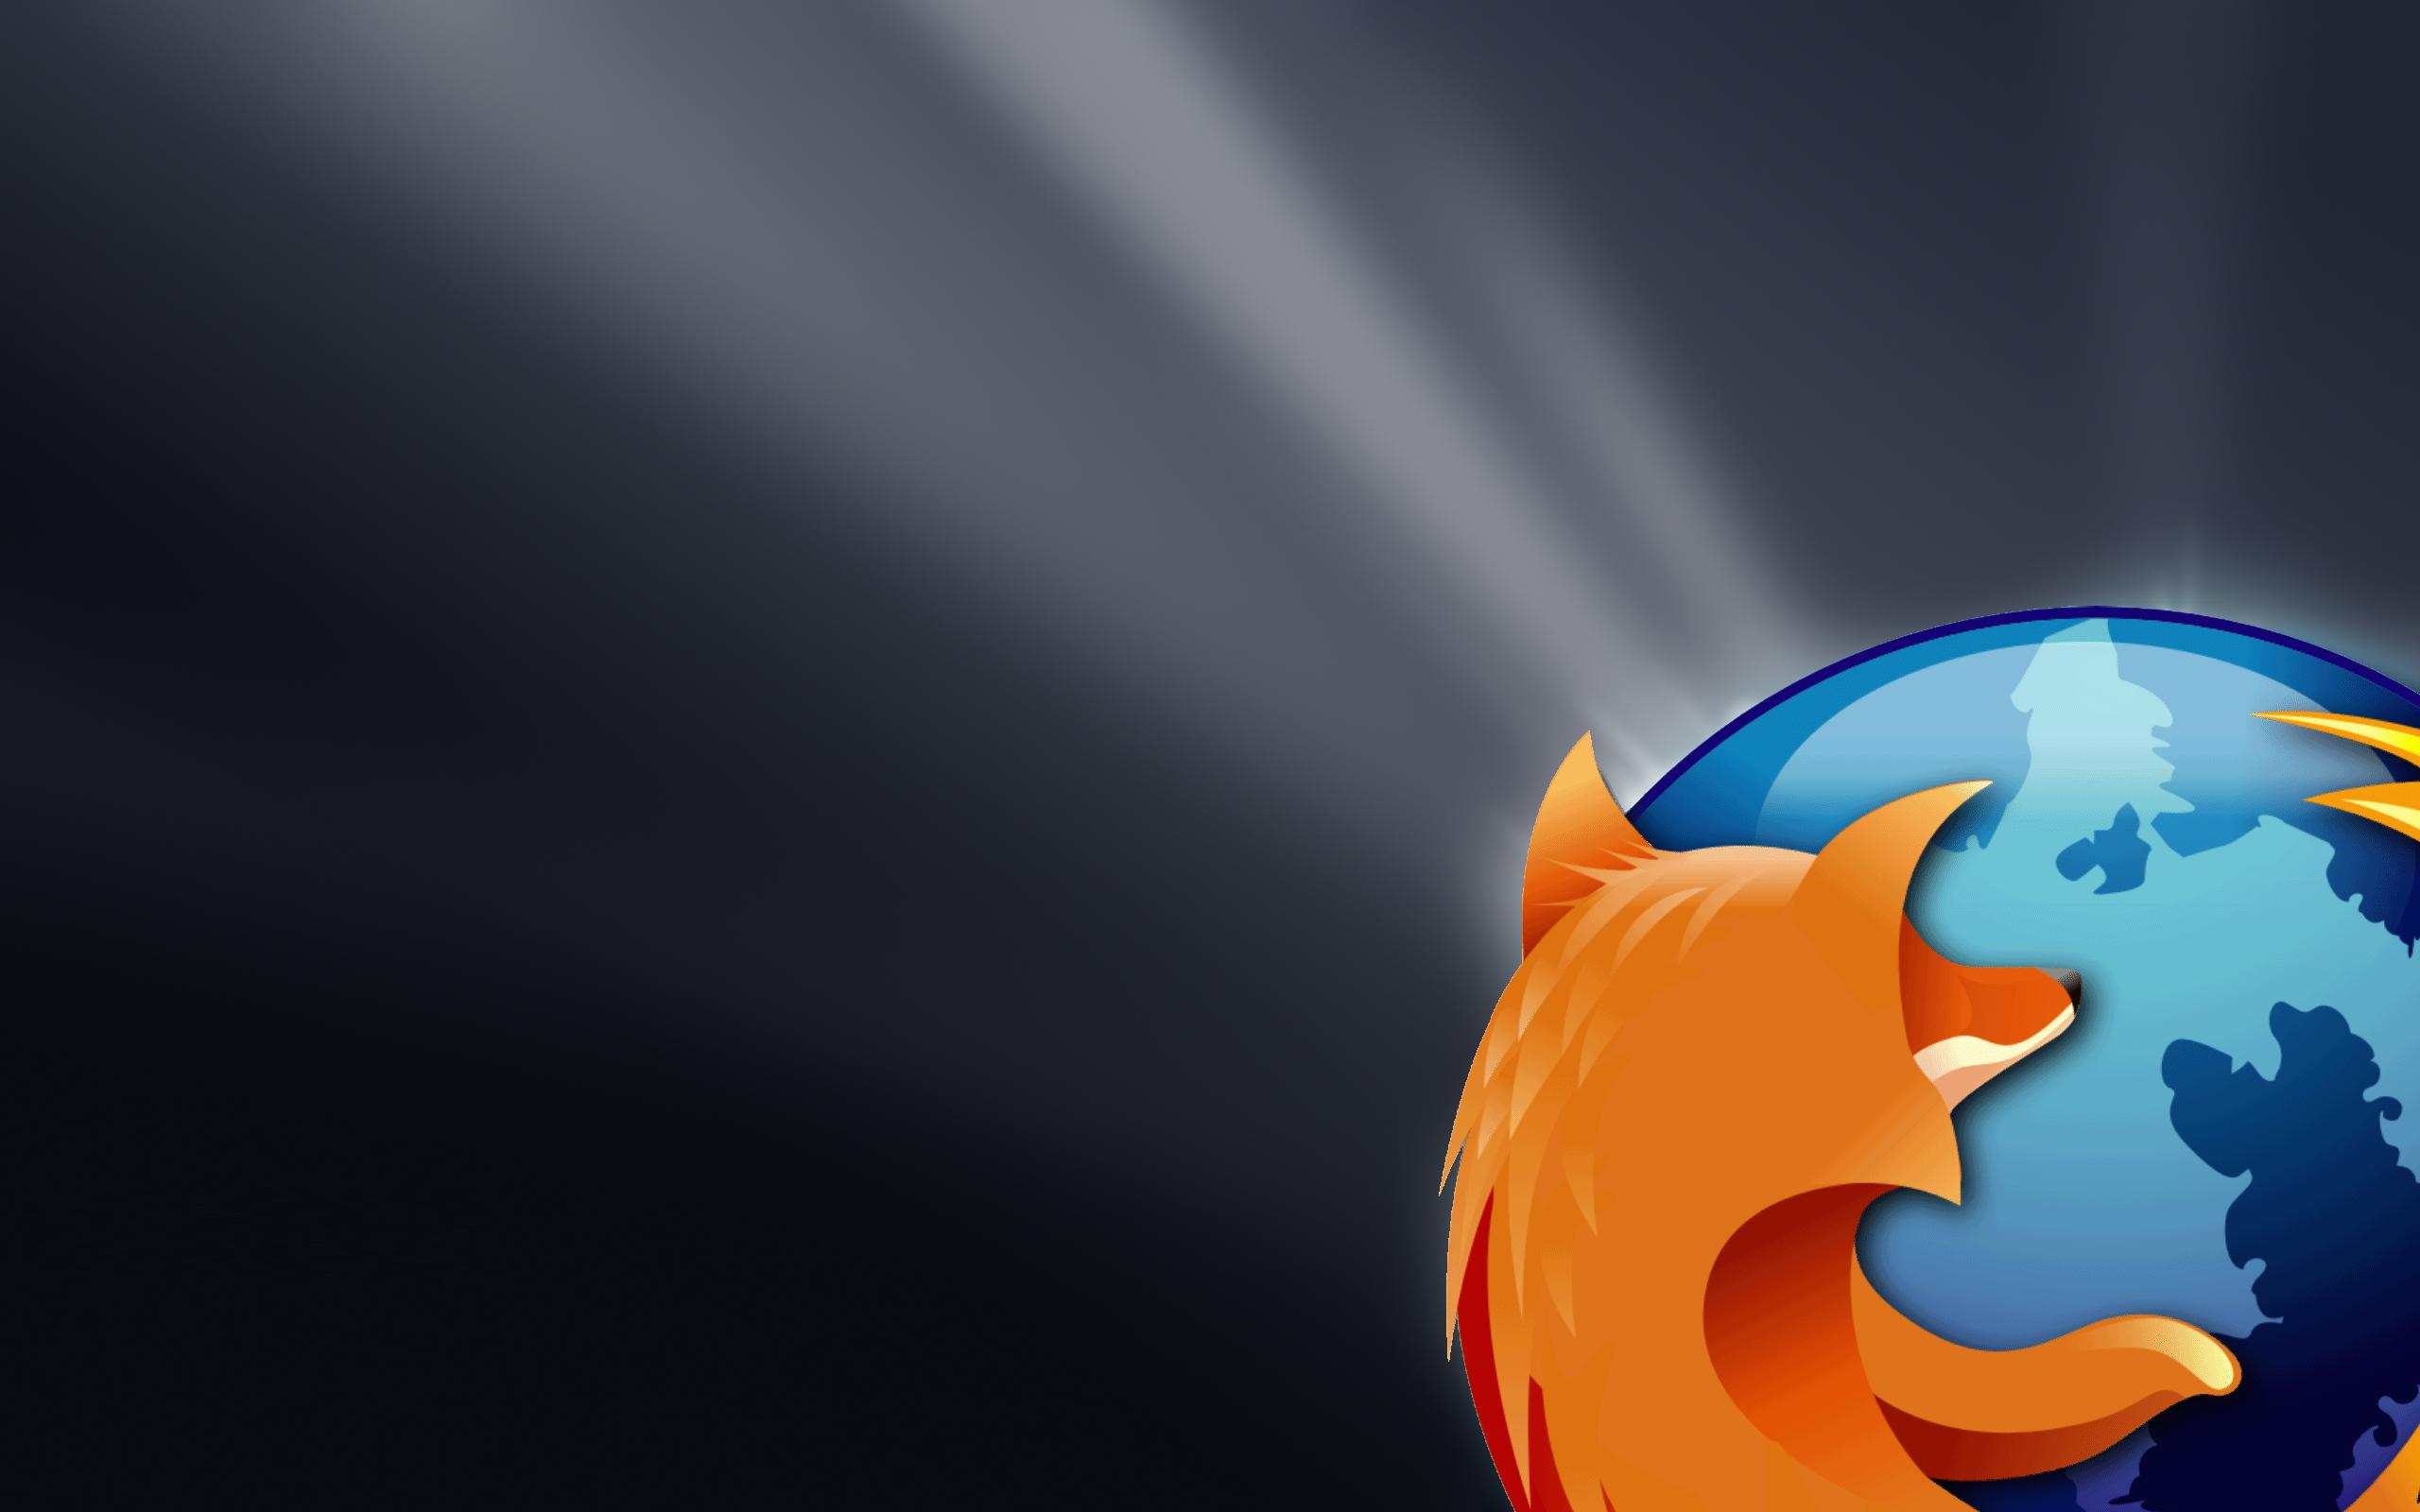 Firefox Background 19364 2560x1600 px